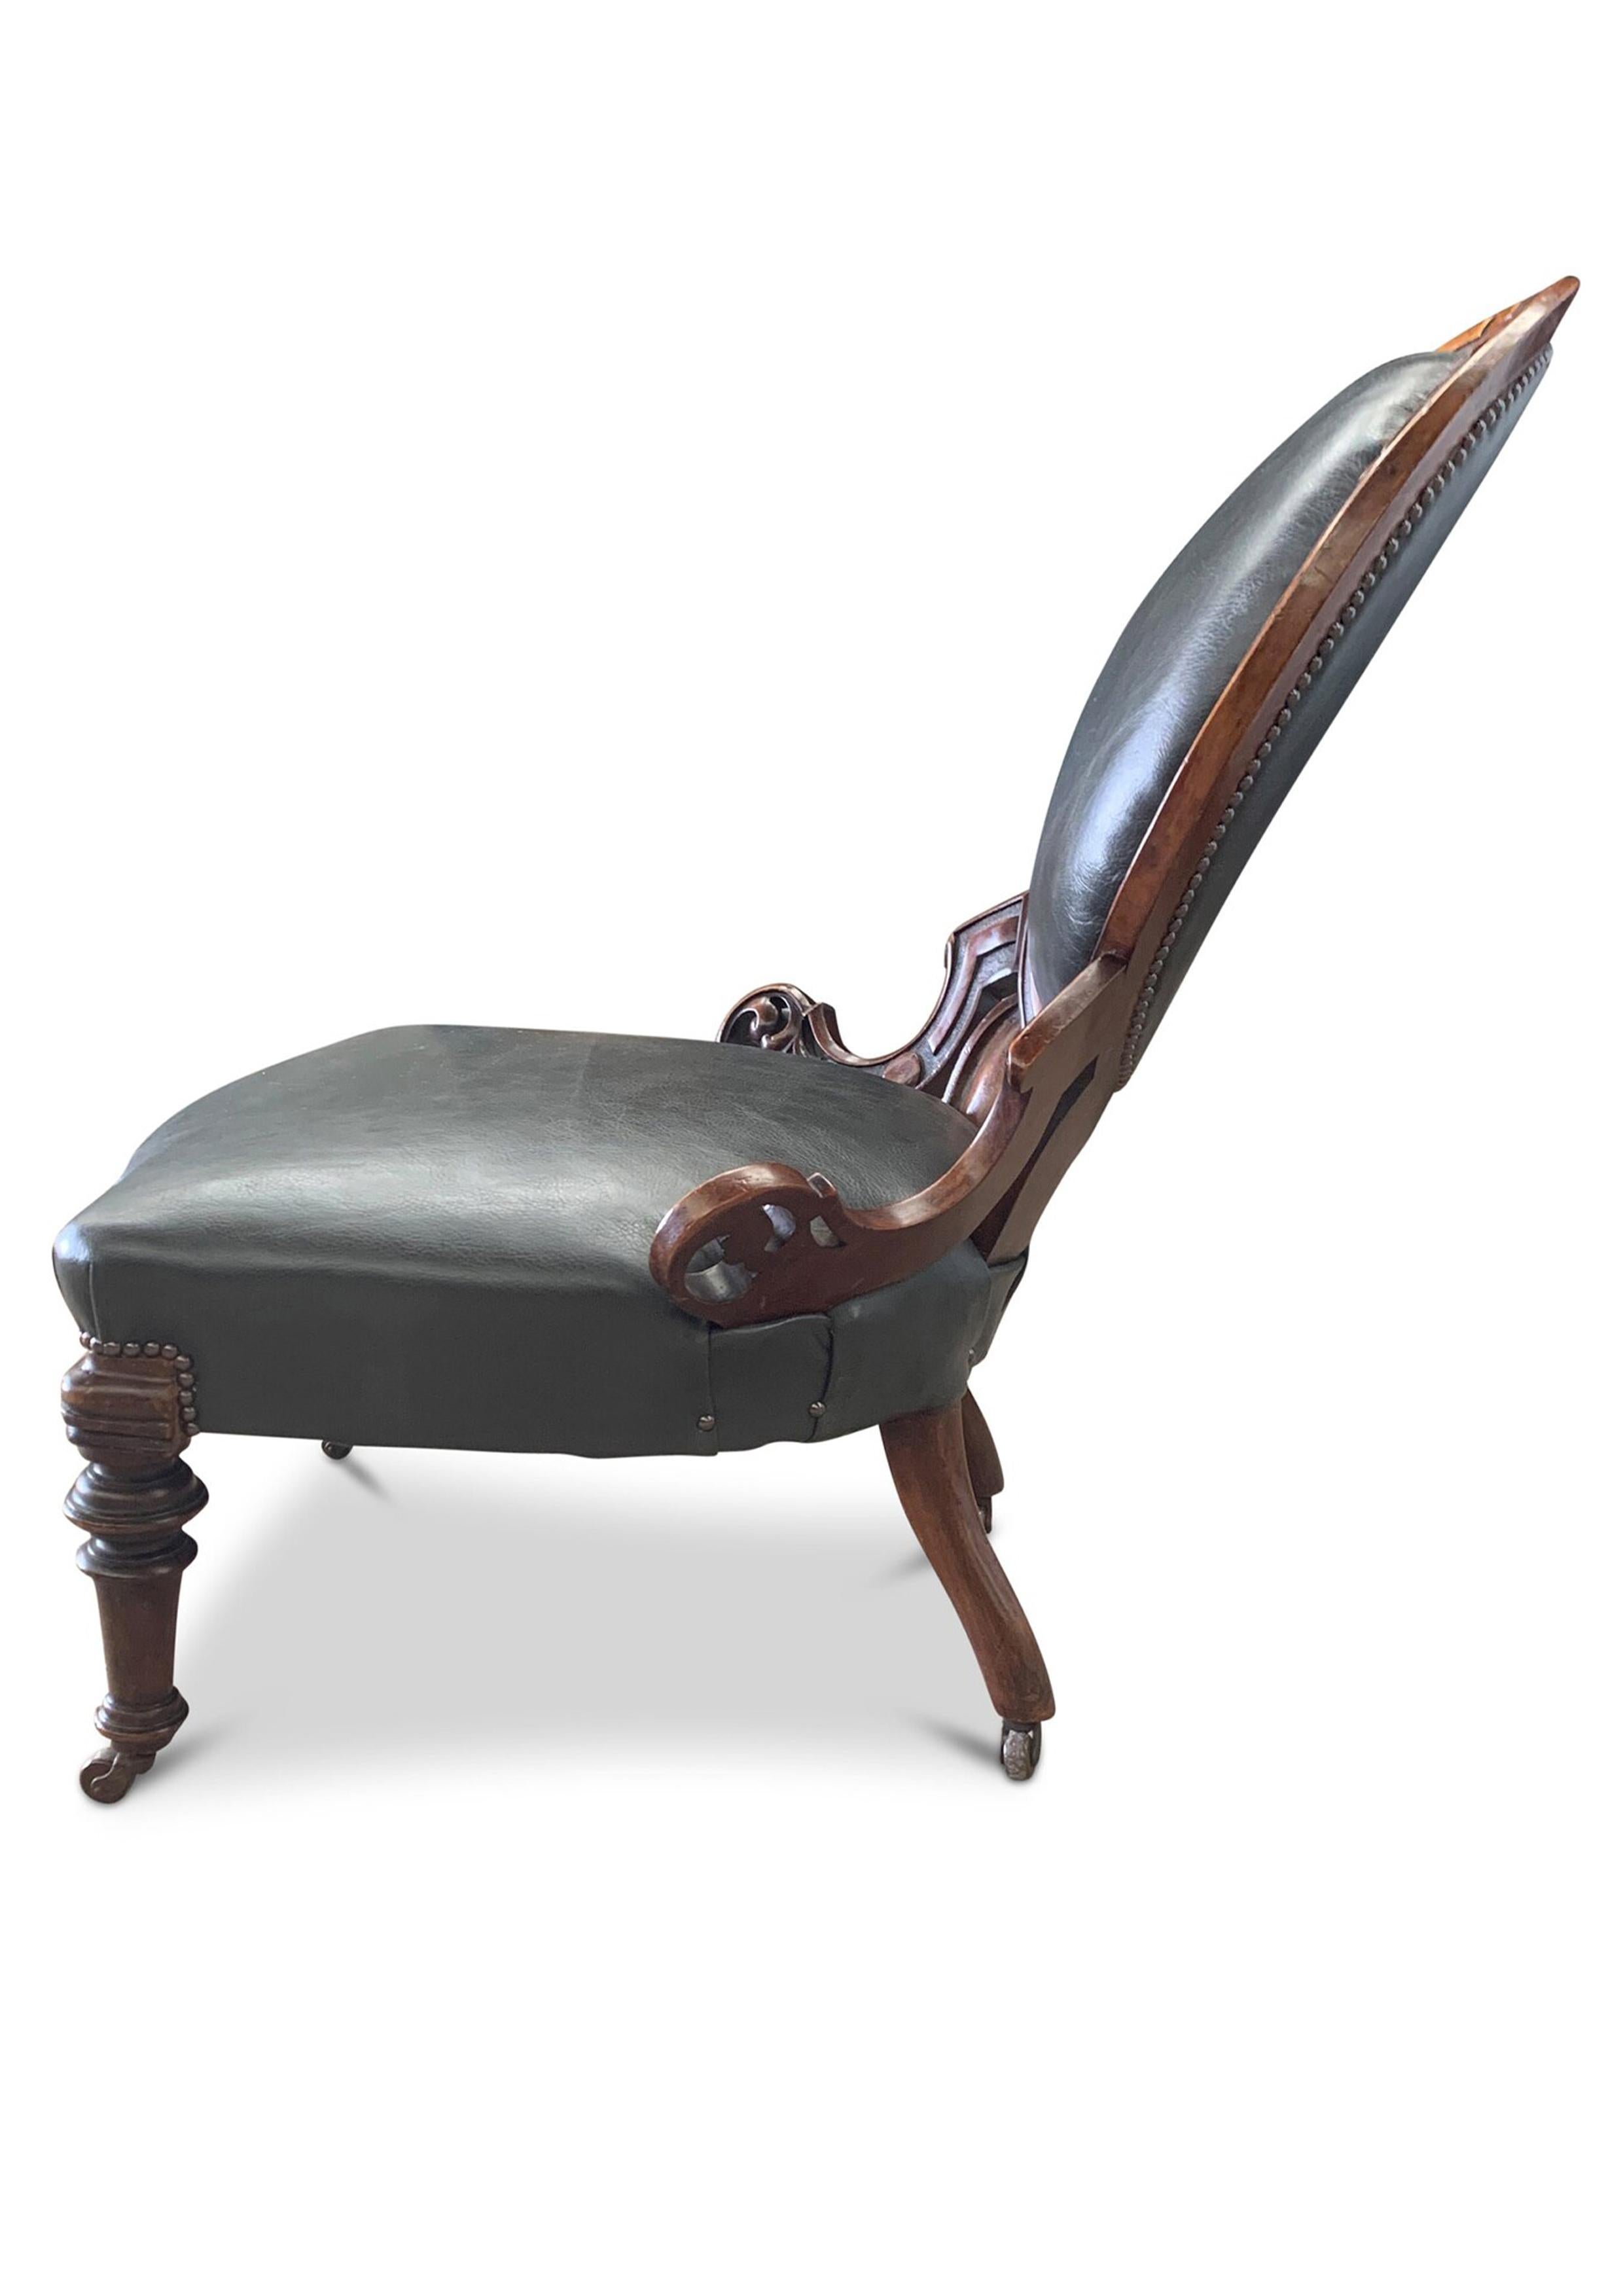 Magnifique fauteuil de bibliothèque ancien en cuir gris et noyer avec motifs sculptés, clous en laiton et roulettes en céramique d'origine Regency Circa 1830's


